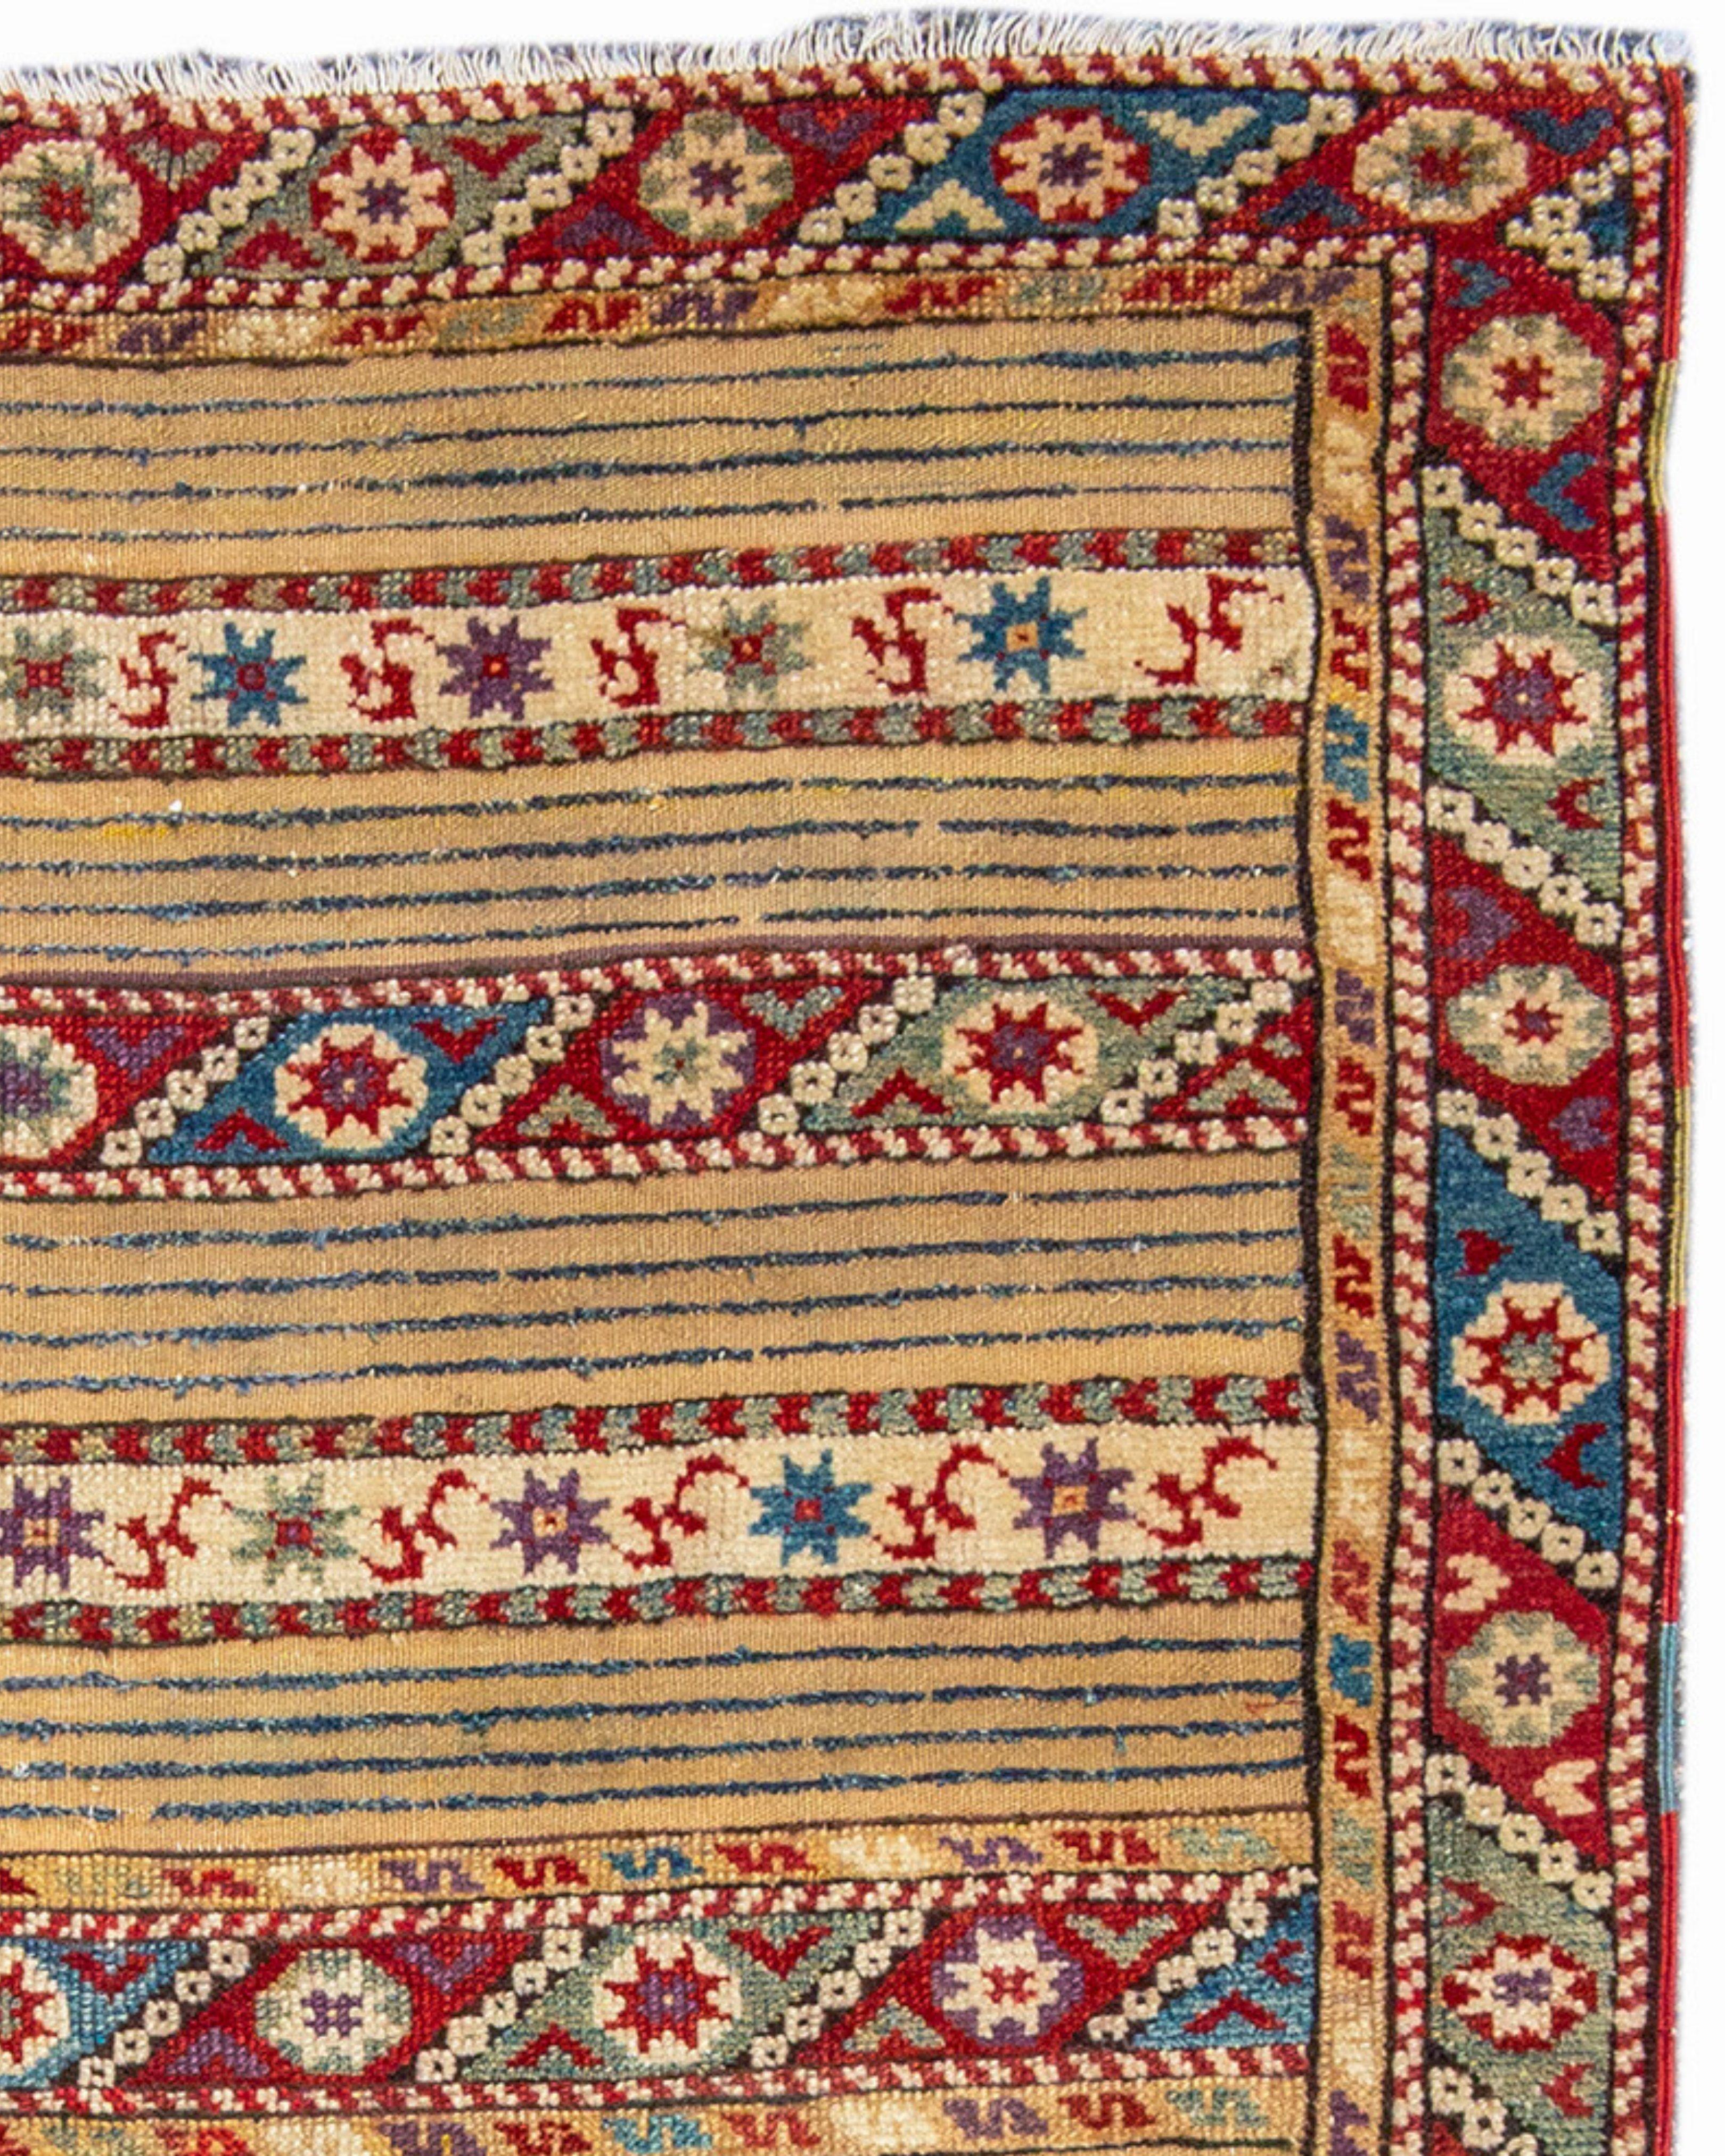 Ancien tapis turc Dazghiri, 19e siècle

Informations supplémentaires :
Dimensions : 4'3